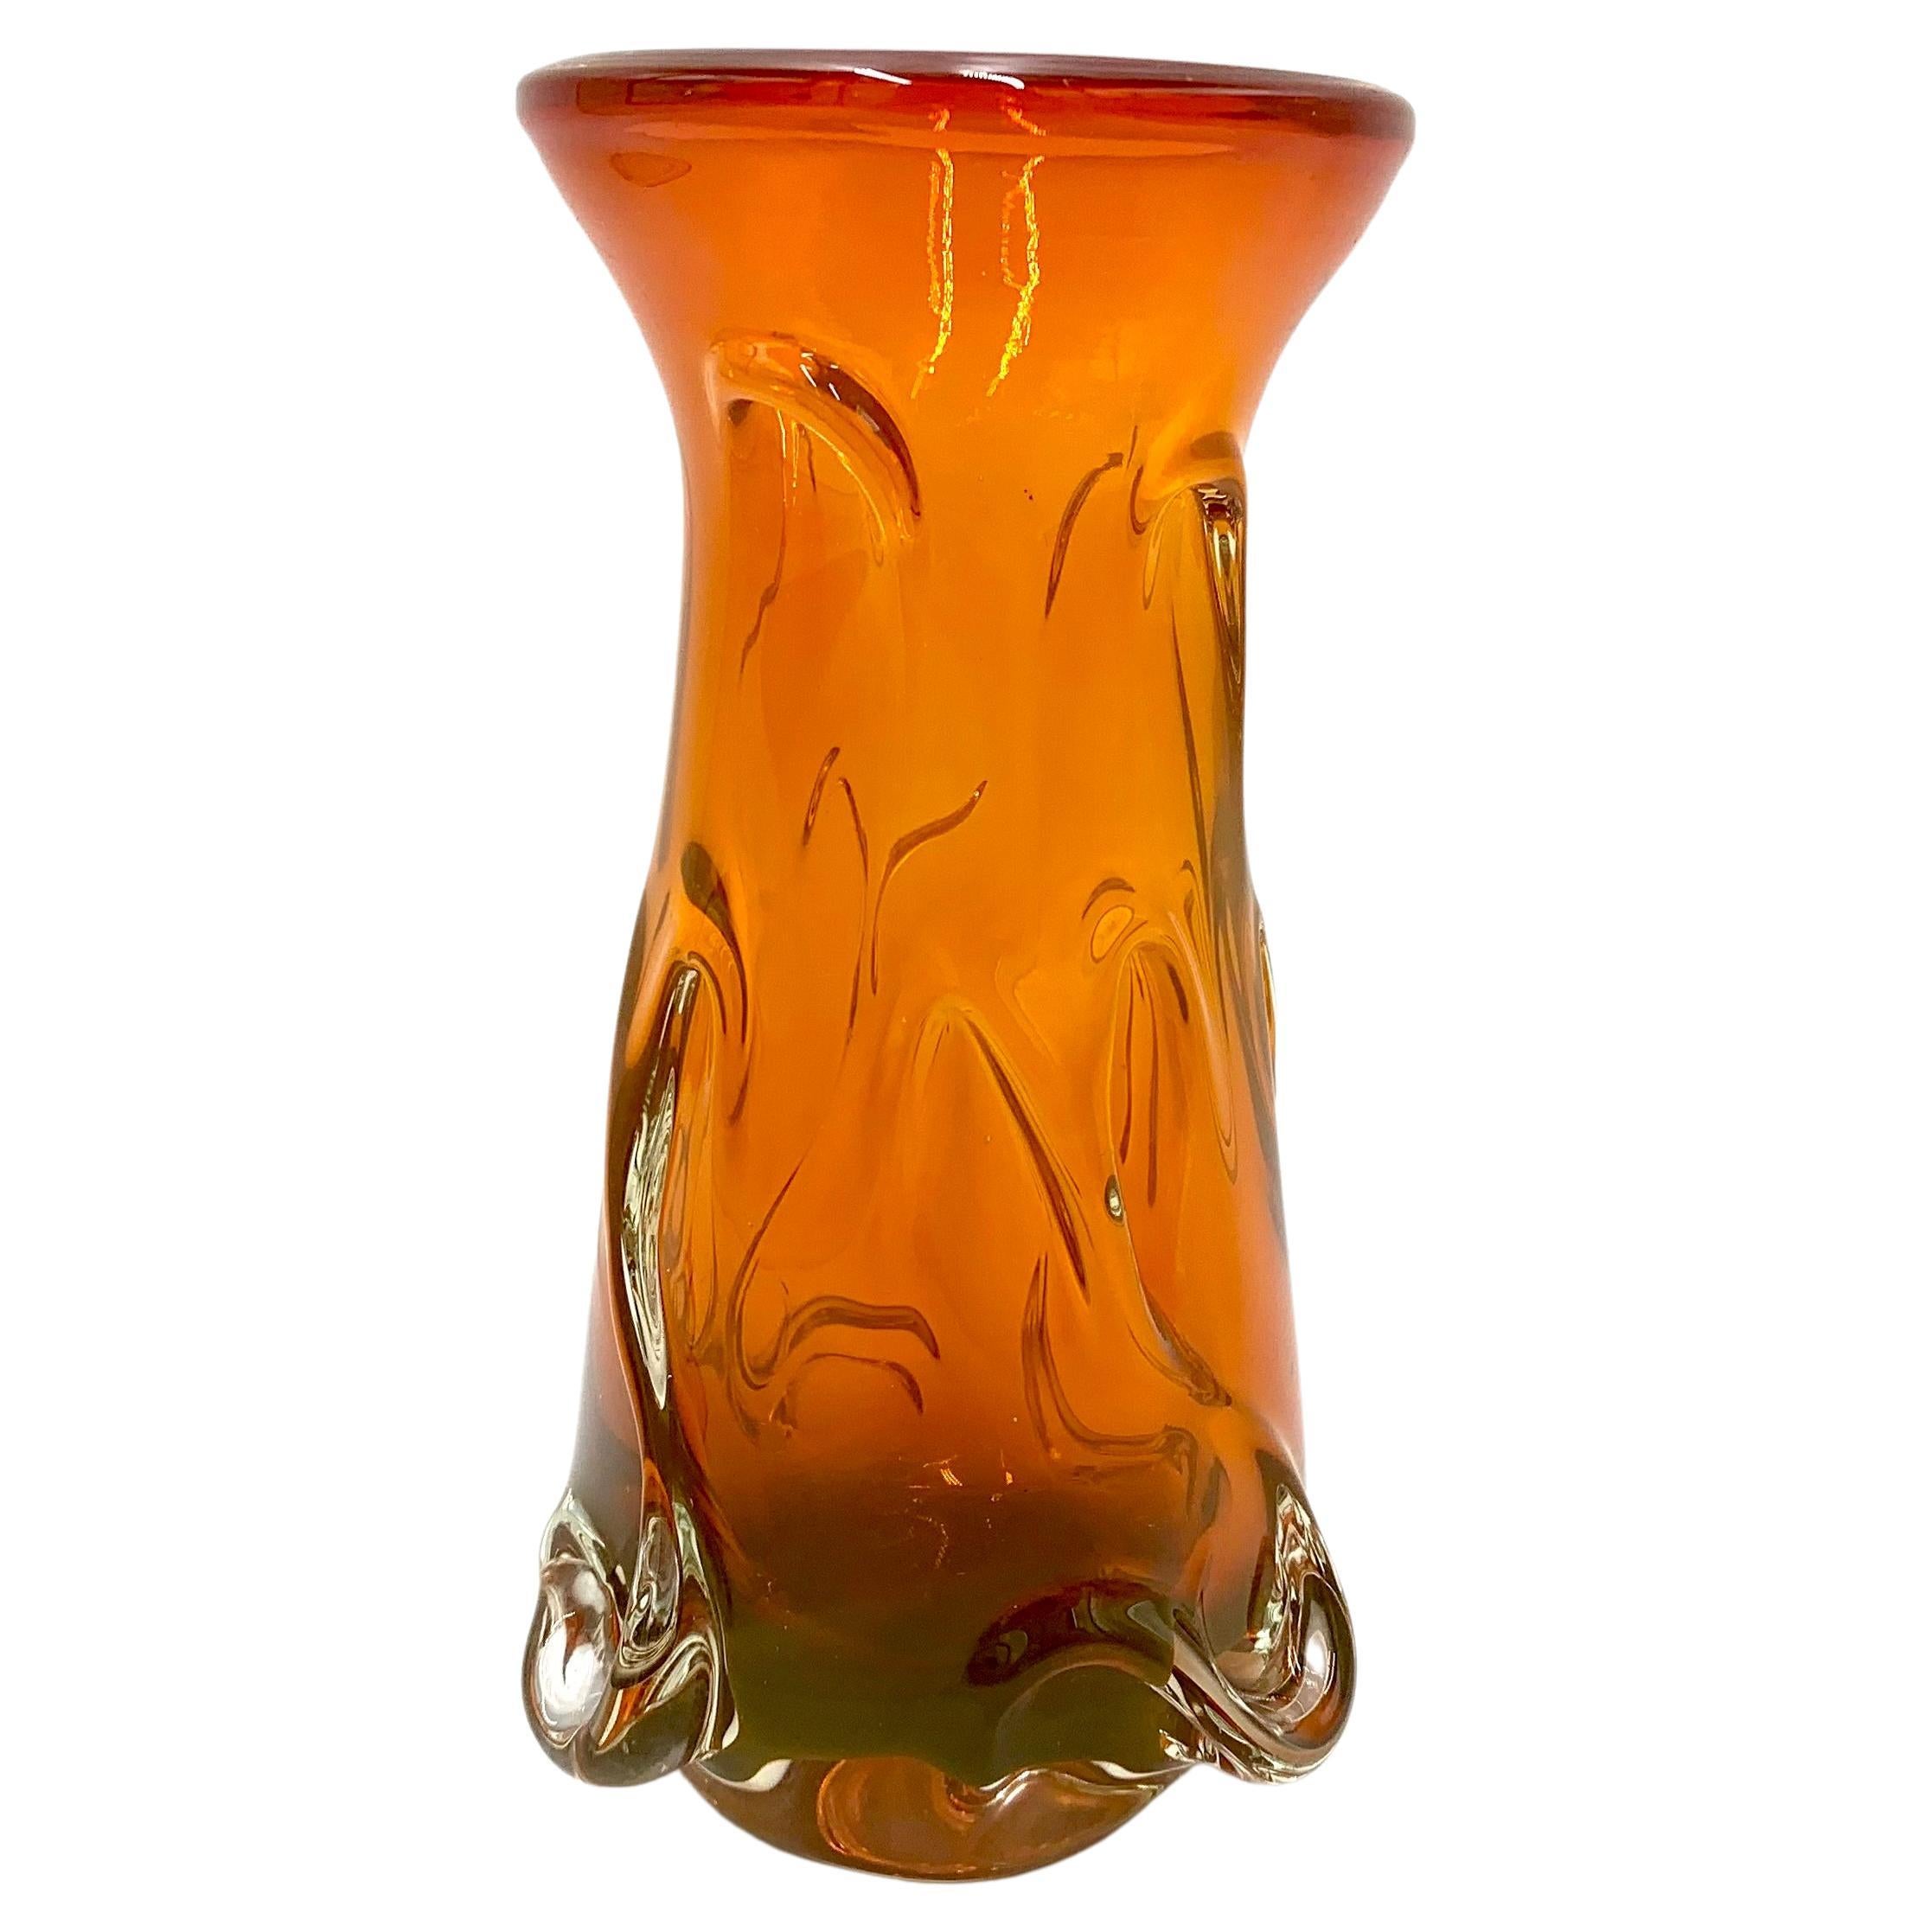 La Vida Keramikkugelvase Kiara orange D19H13 Vasen Tischvase Keramikvase Vase 